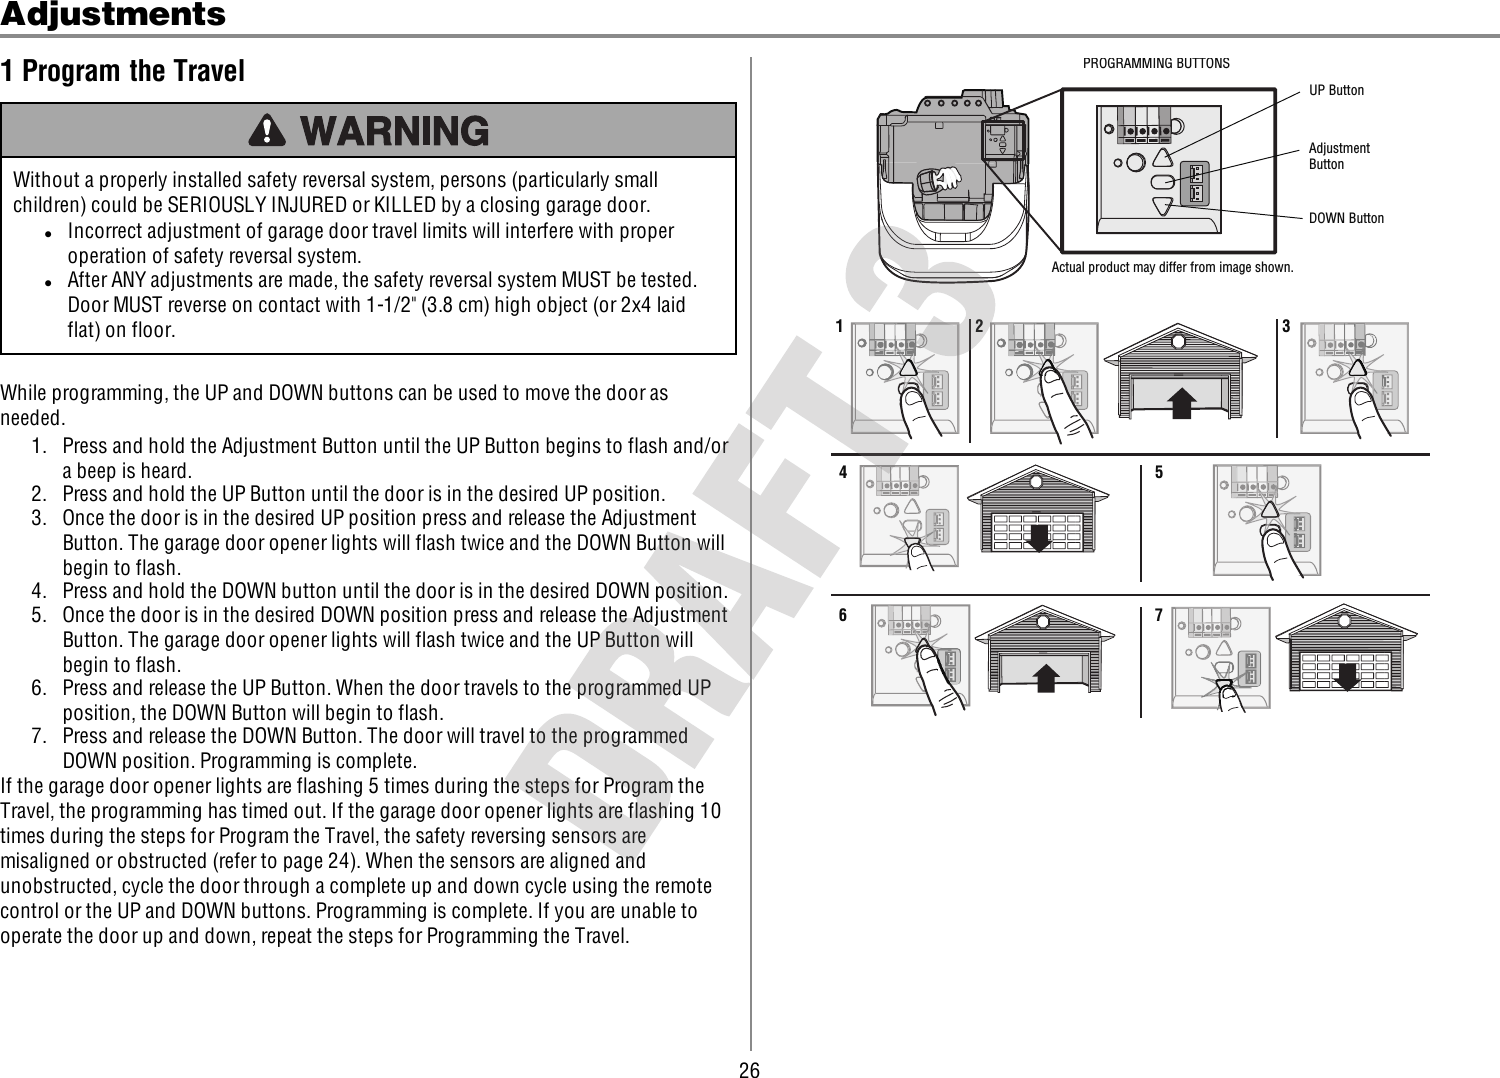 Chamberlain Remote Garage Door Opener Manual - Garage and Bedroom Image